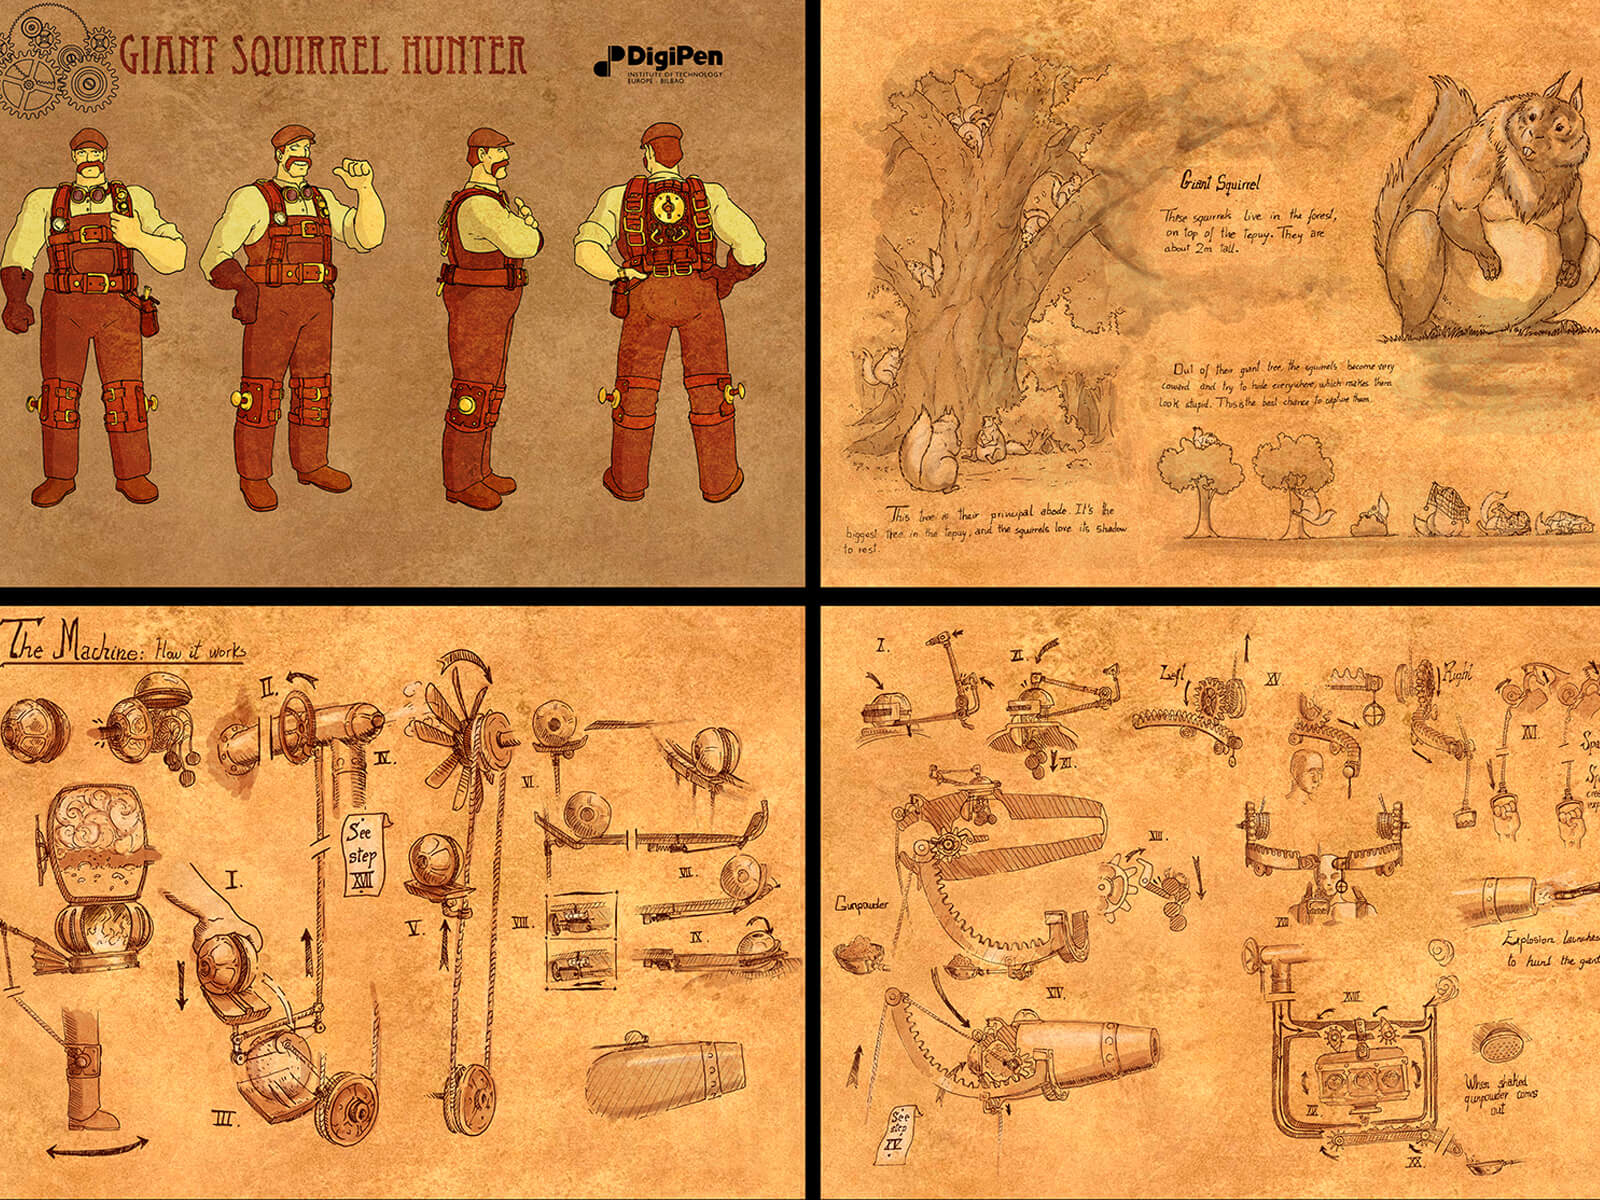 Arte conceptual en tonos sepia de un personaje cazador de ardillas, su equipamiento mecánico y una descripción de las bestiales ardillas gigantes.